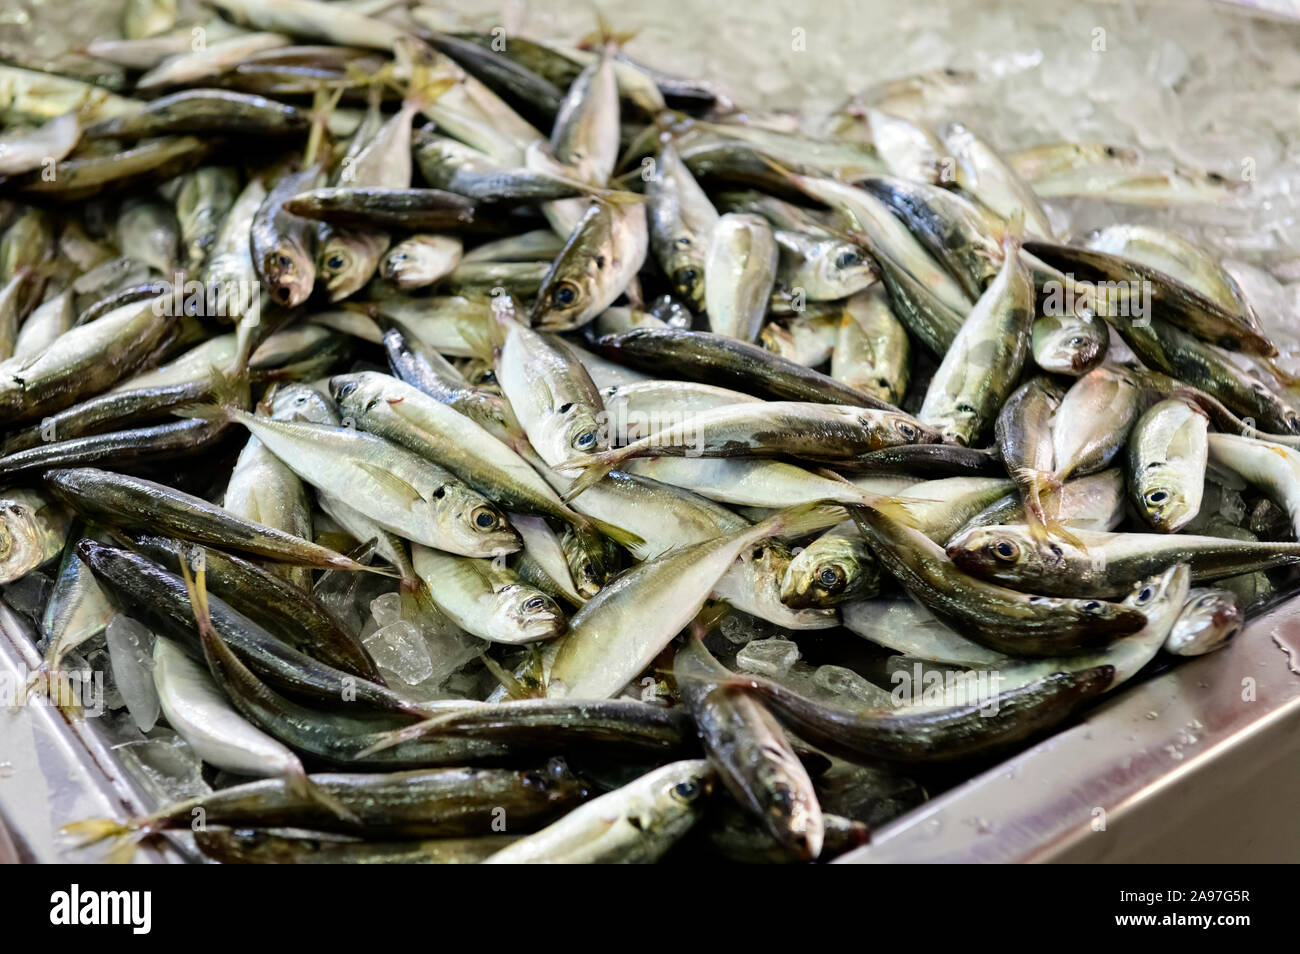 Fischhändler zeigen frische Sardinen, die am selben Tag auf dem Fisch- und Produktmarkt in Olhao gefangen wurden. Olhao Algarve, Portugal. Stockfoto